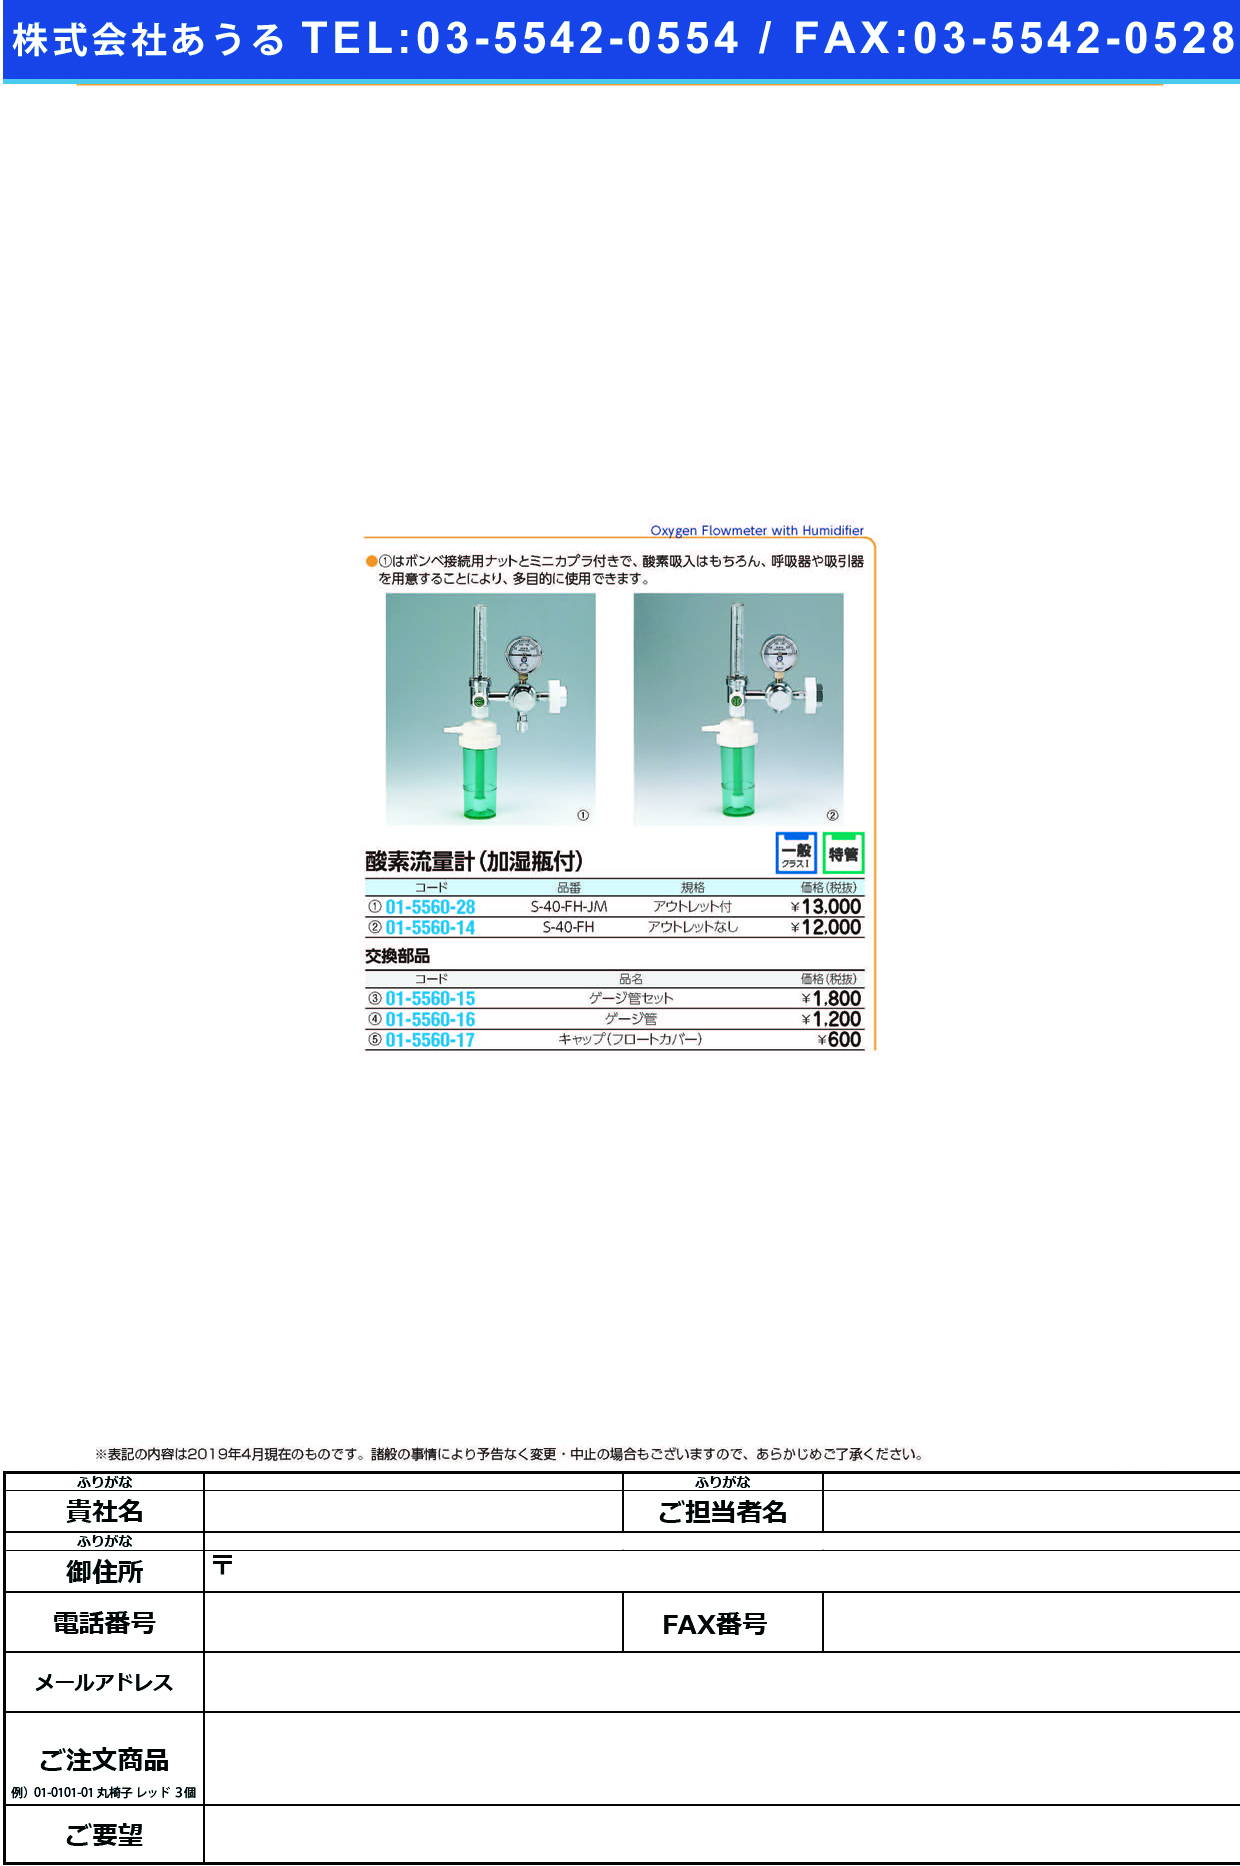 (01-5560-14)酸素流量計（加湿瓶付）セット S-40-FH ｻﾝｿﾘｭｳﾘｮｳｹｲｾｯﾄ(ブルークロス・エマージェンシー)【1組単位】【2019年カタログ商品】